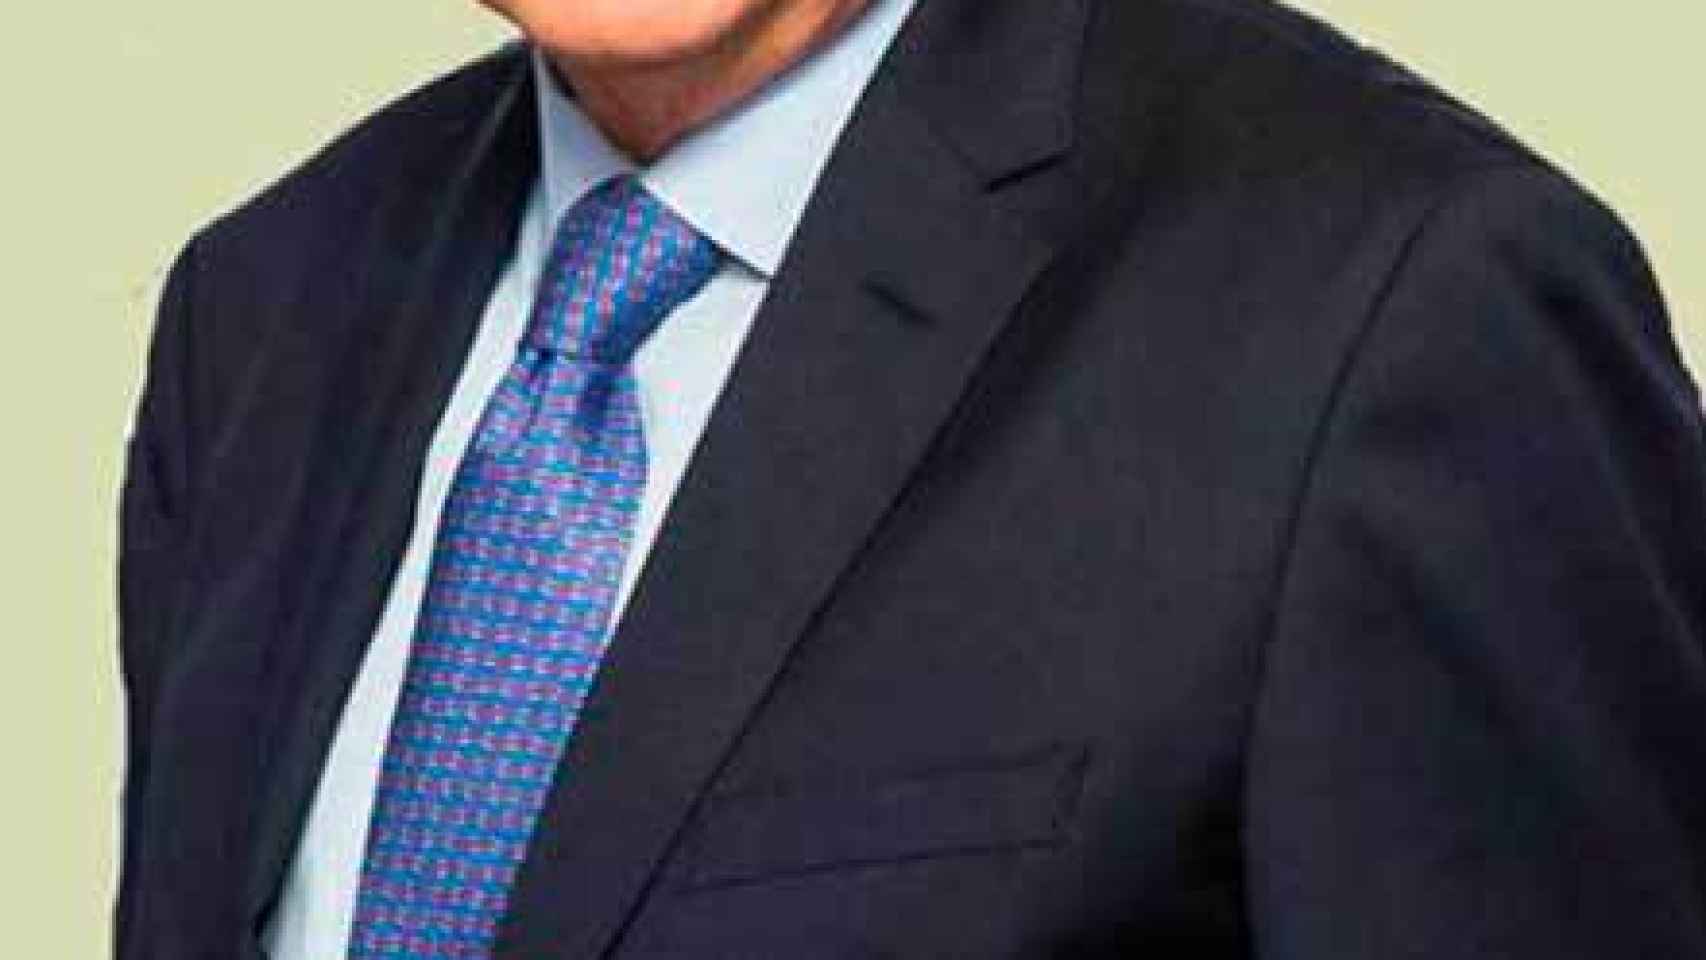 Carlos Egea, fue presidente del consejo de administración de Banco Mare Nostrum desde 2010 y hasta su fusión con Bankia.